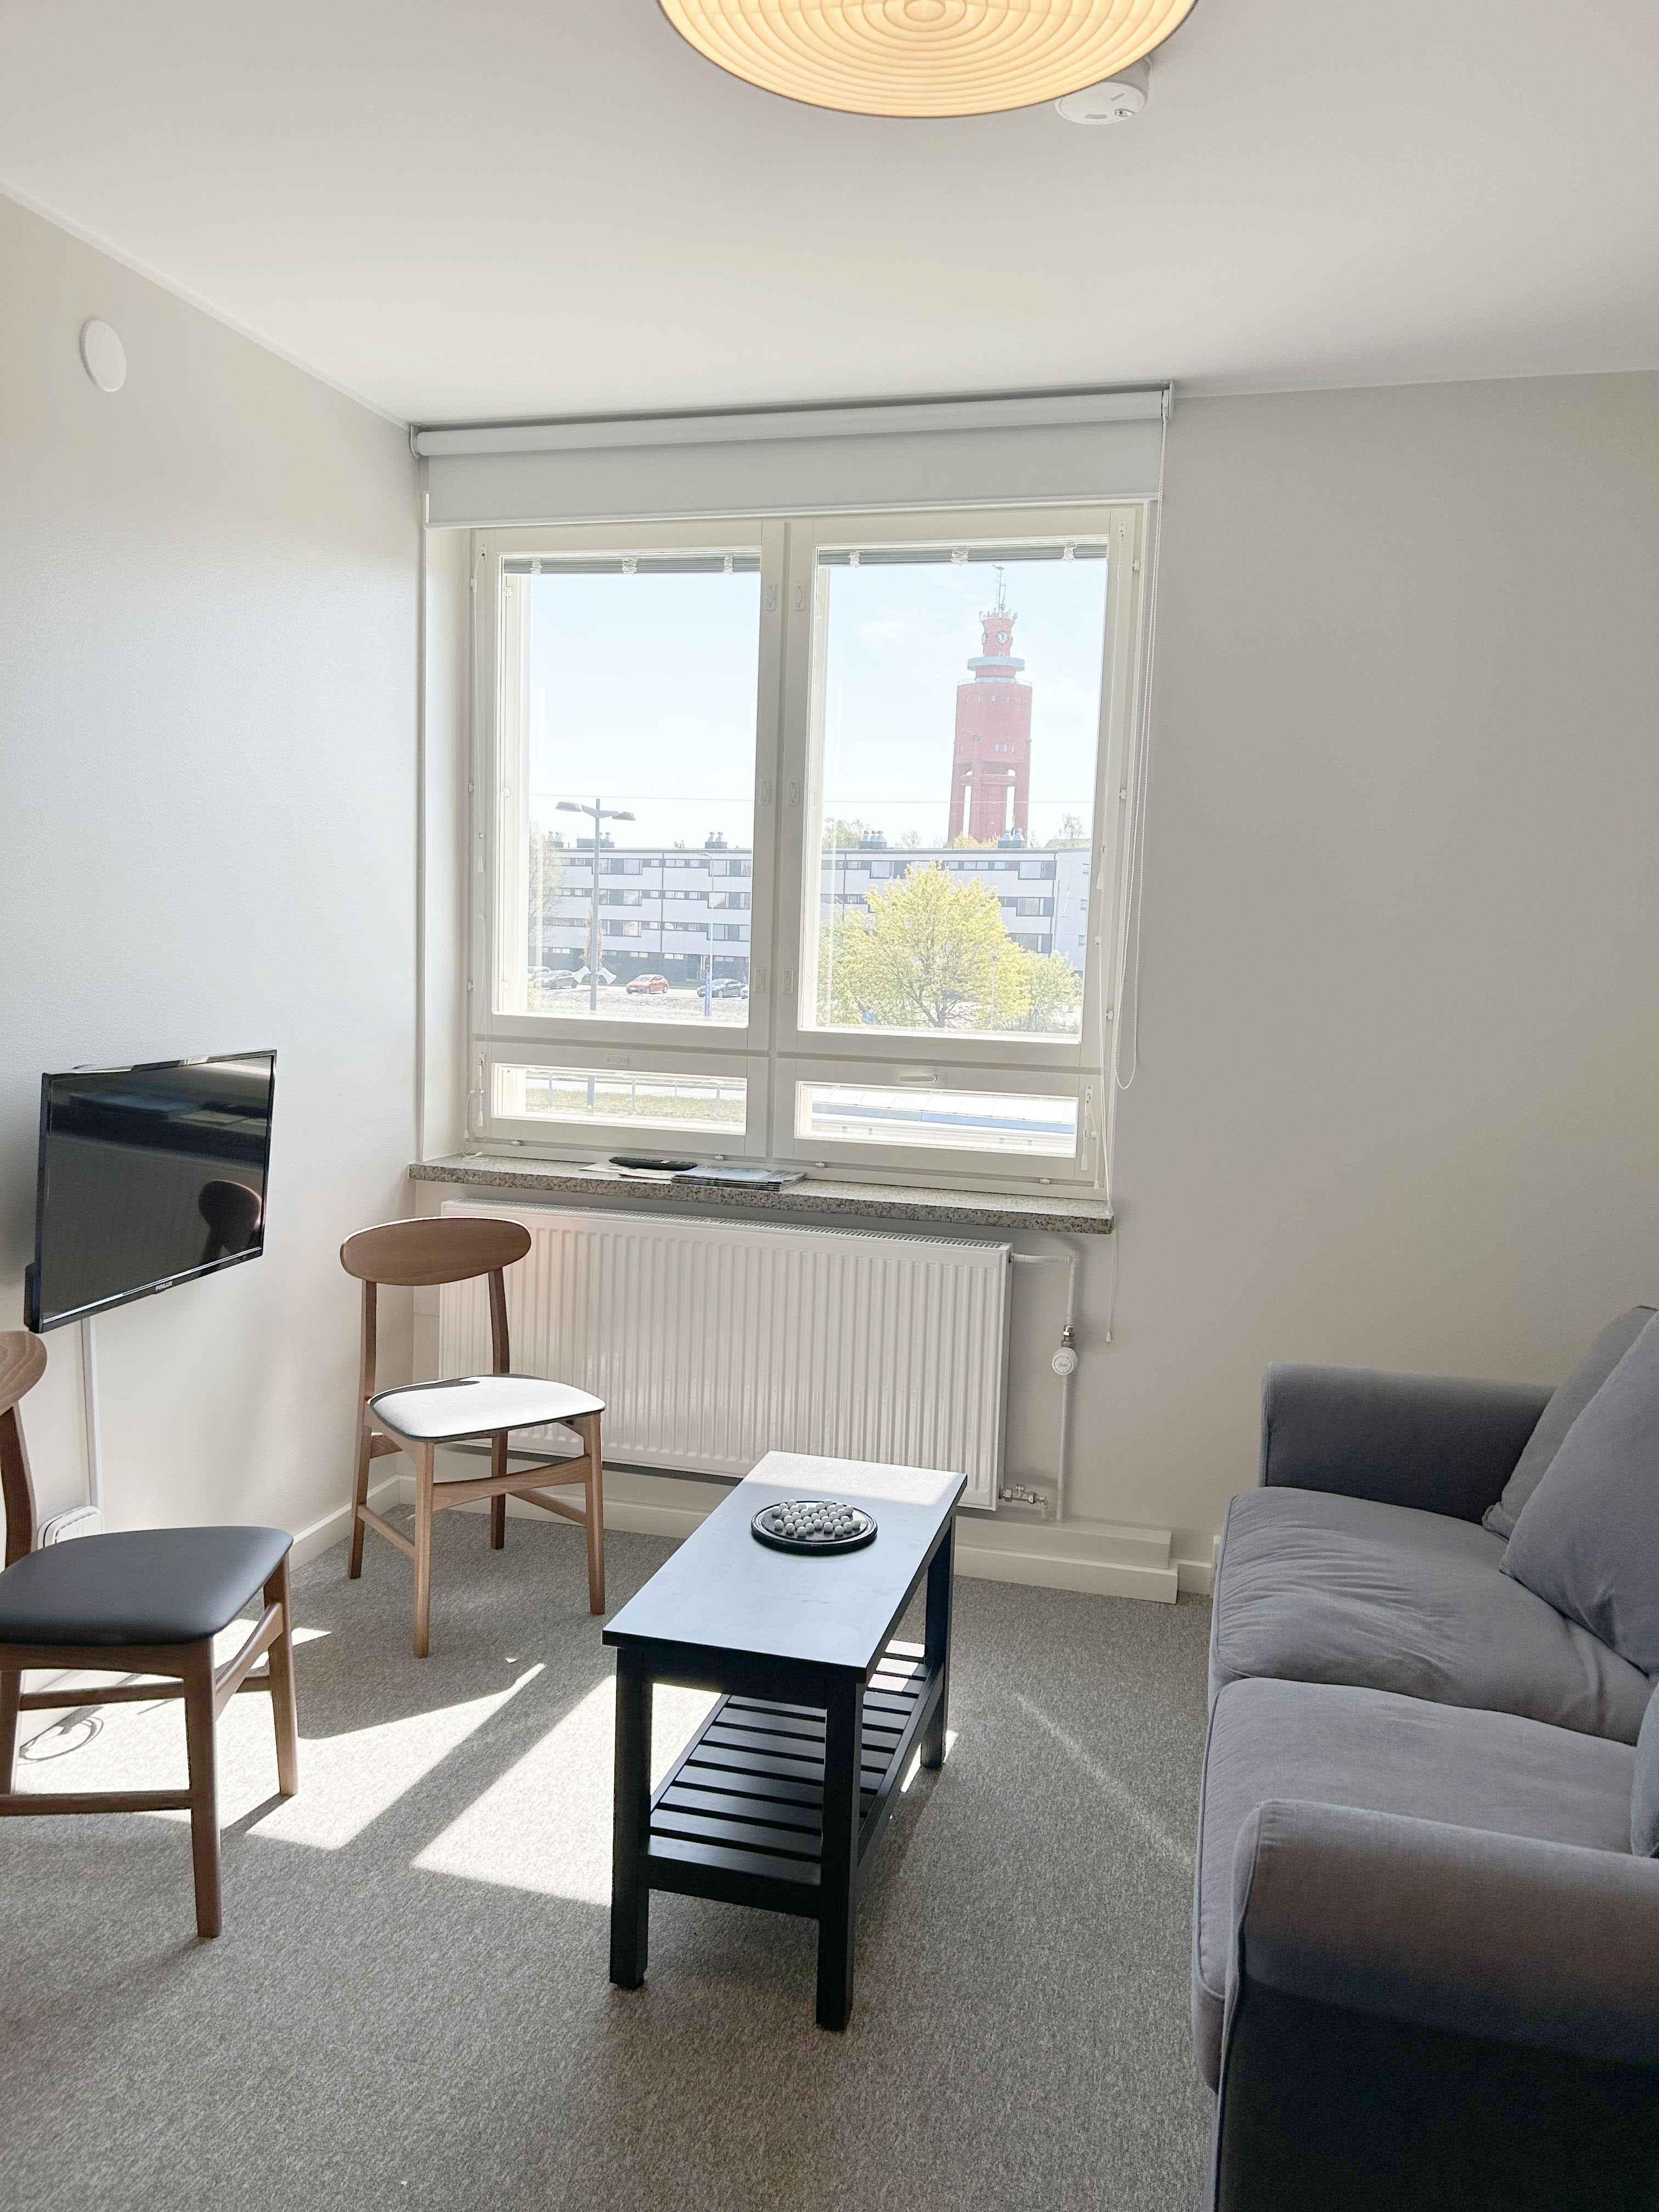 フィンランドの都市は「プロの」Airbnbホストに許可を要求し始めている